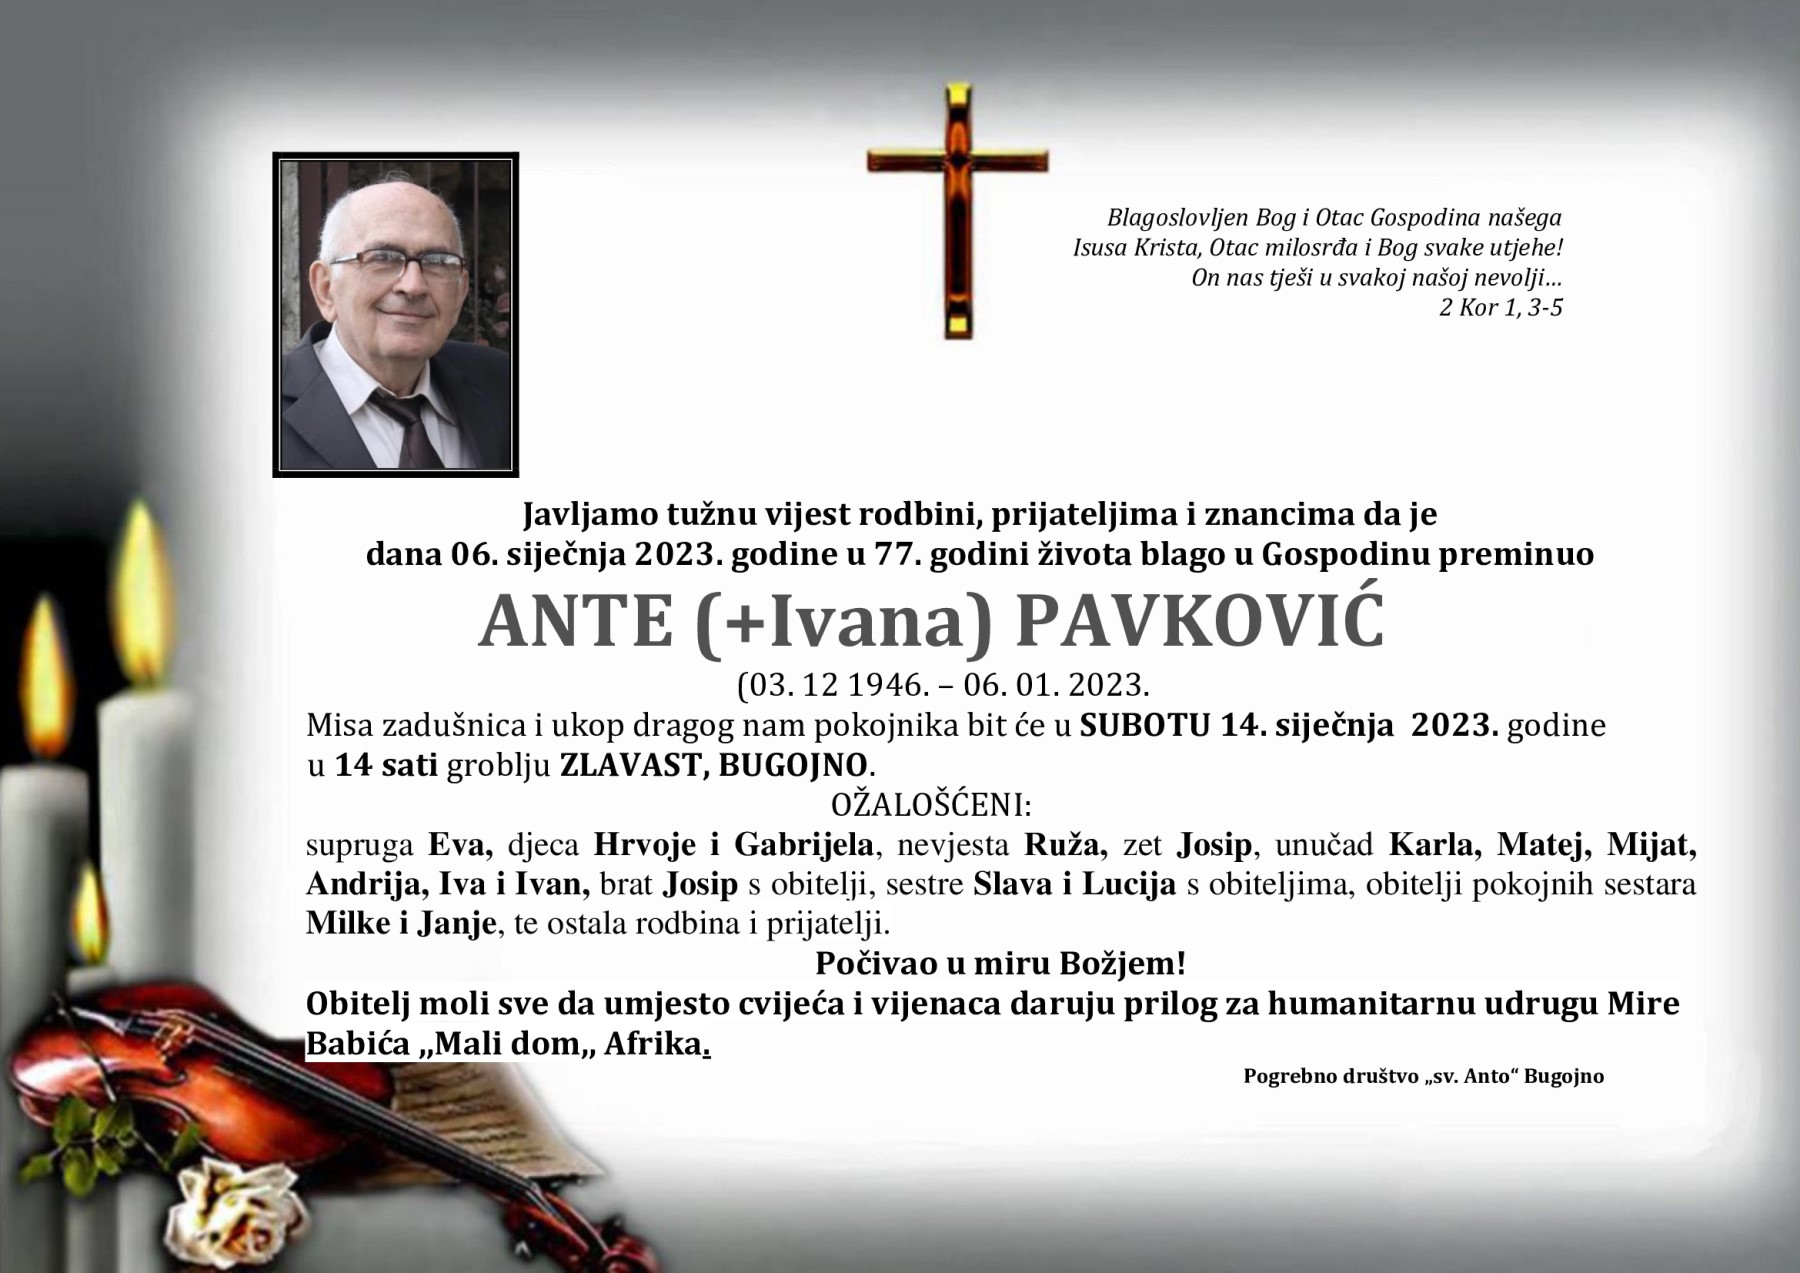 Pavković Ante